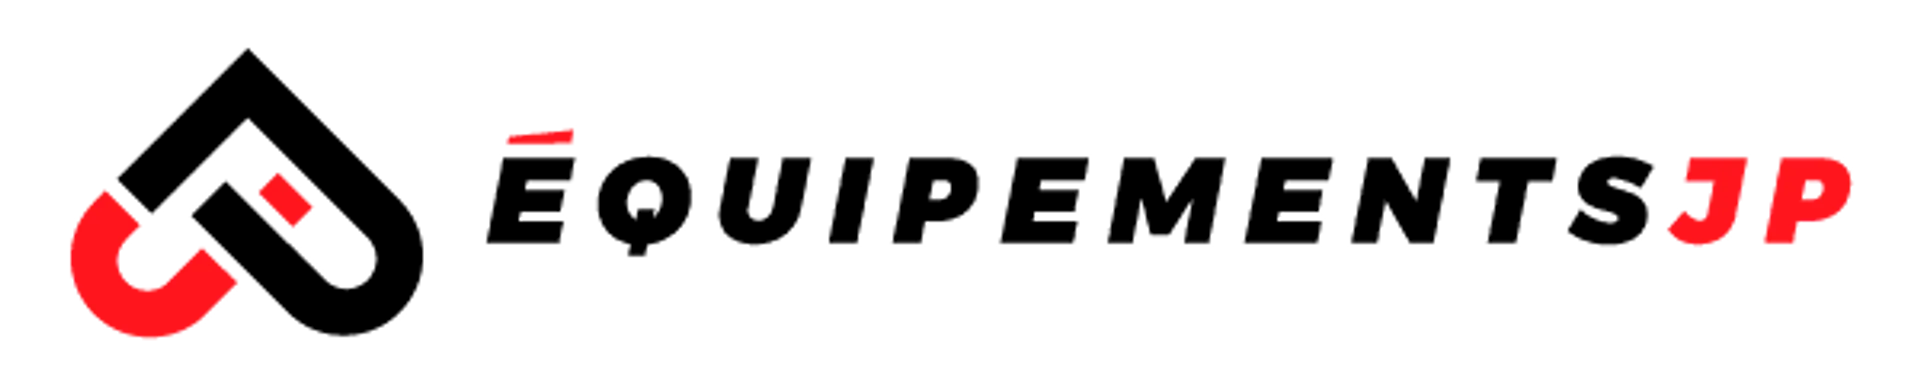 ÉQUIPEMENT JP logo de circulaires